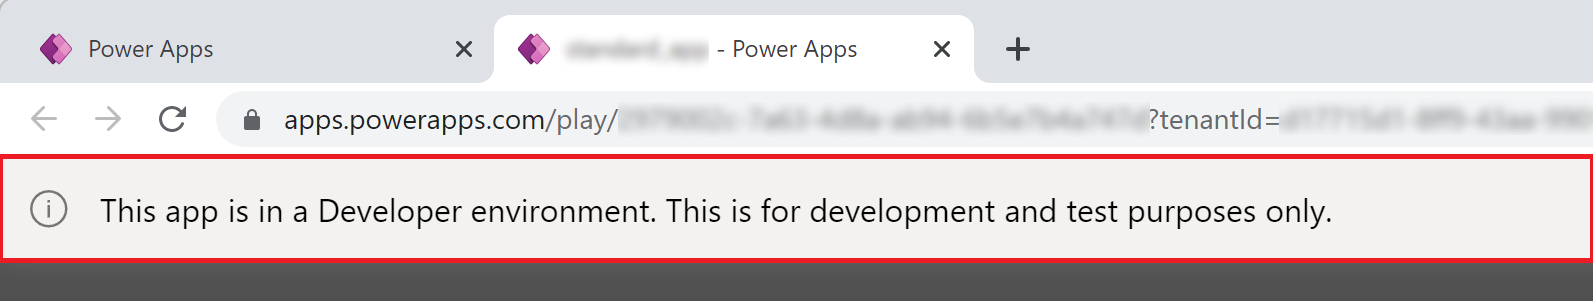 Банер апликације у Power Apps развојном окружењу